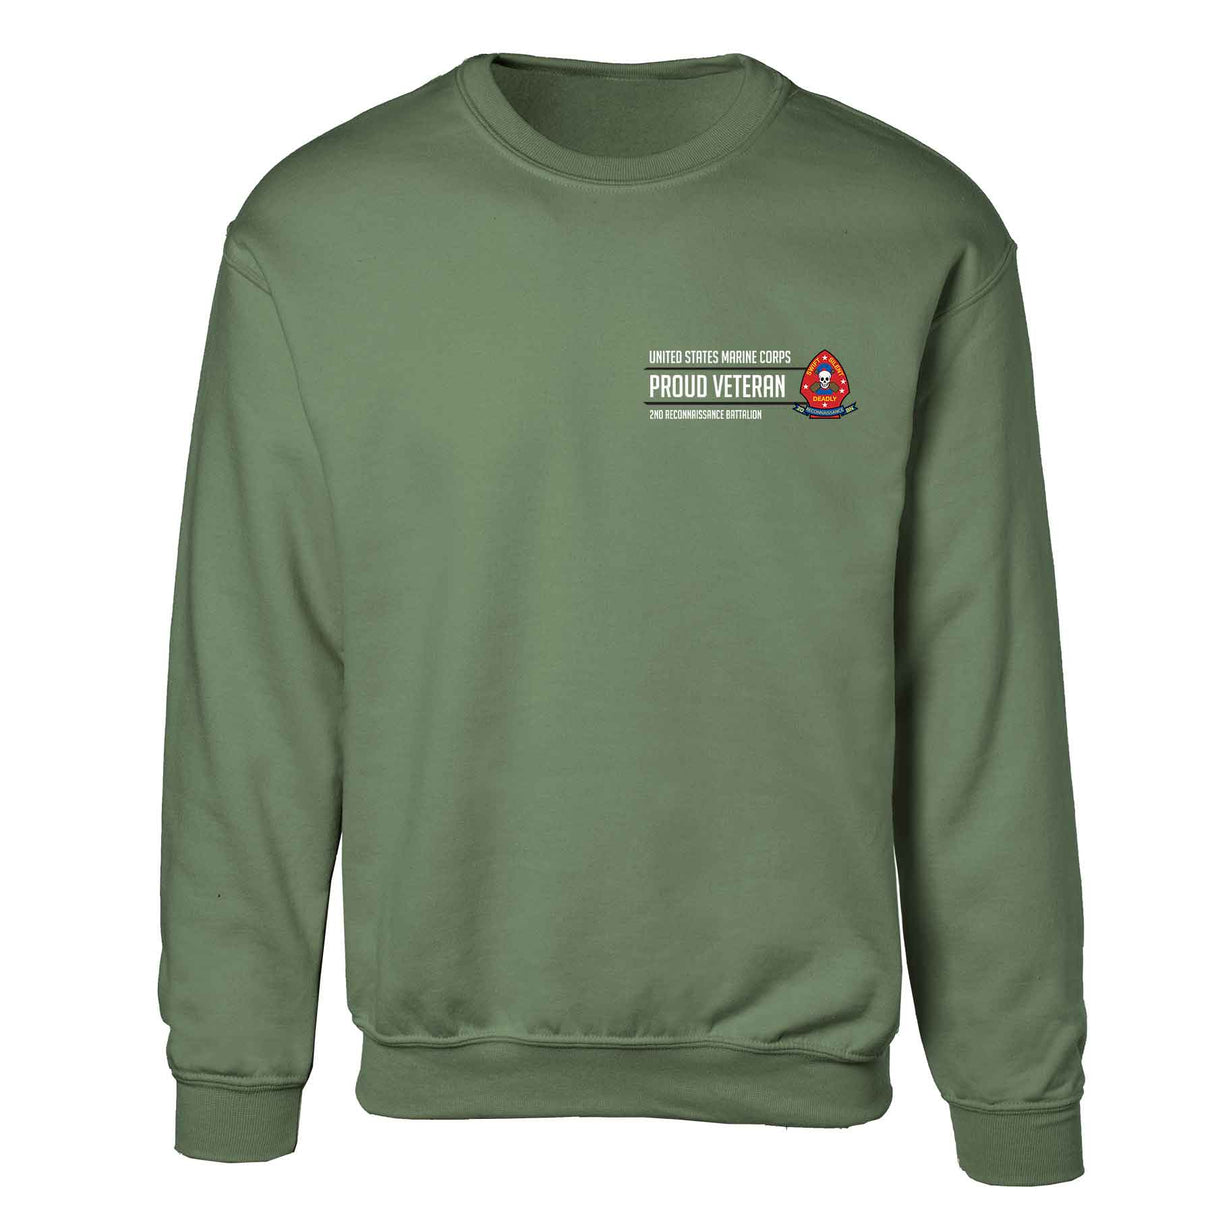 2nd Reconnaissance Battalion Proud Veteran Sweatshirt - SGT GRIT